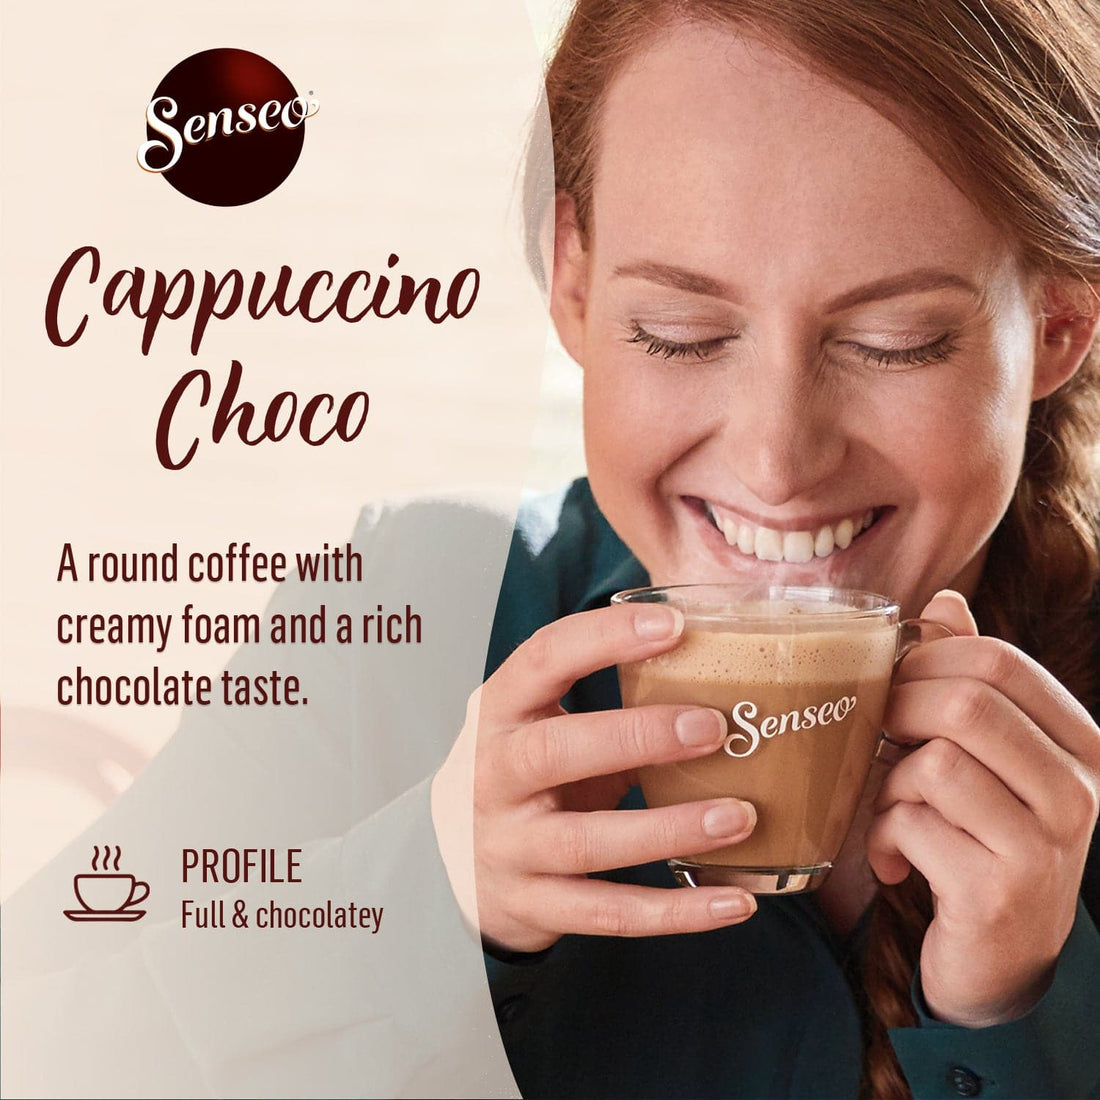 Senseo® Cappuccino Choco Coffee Pads X 80 Pads